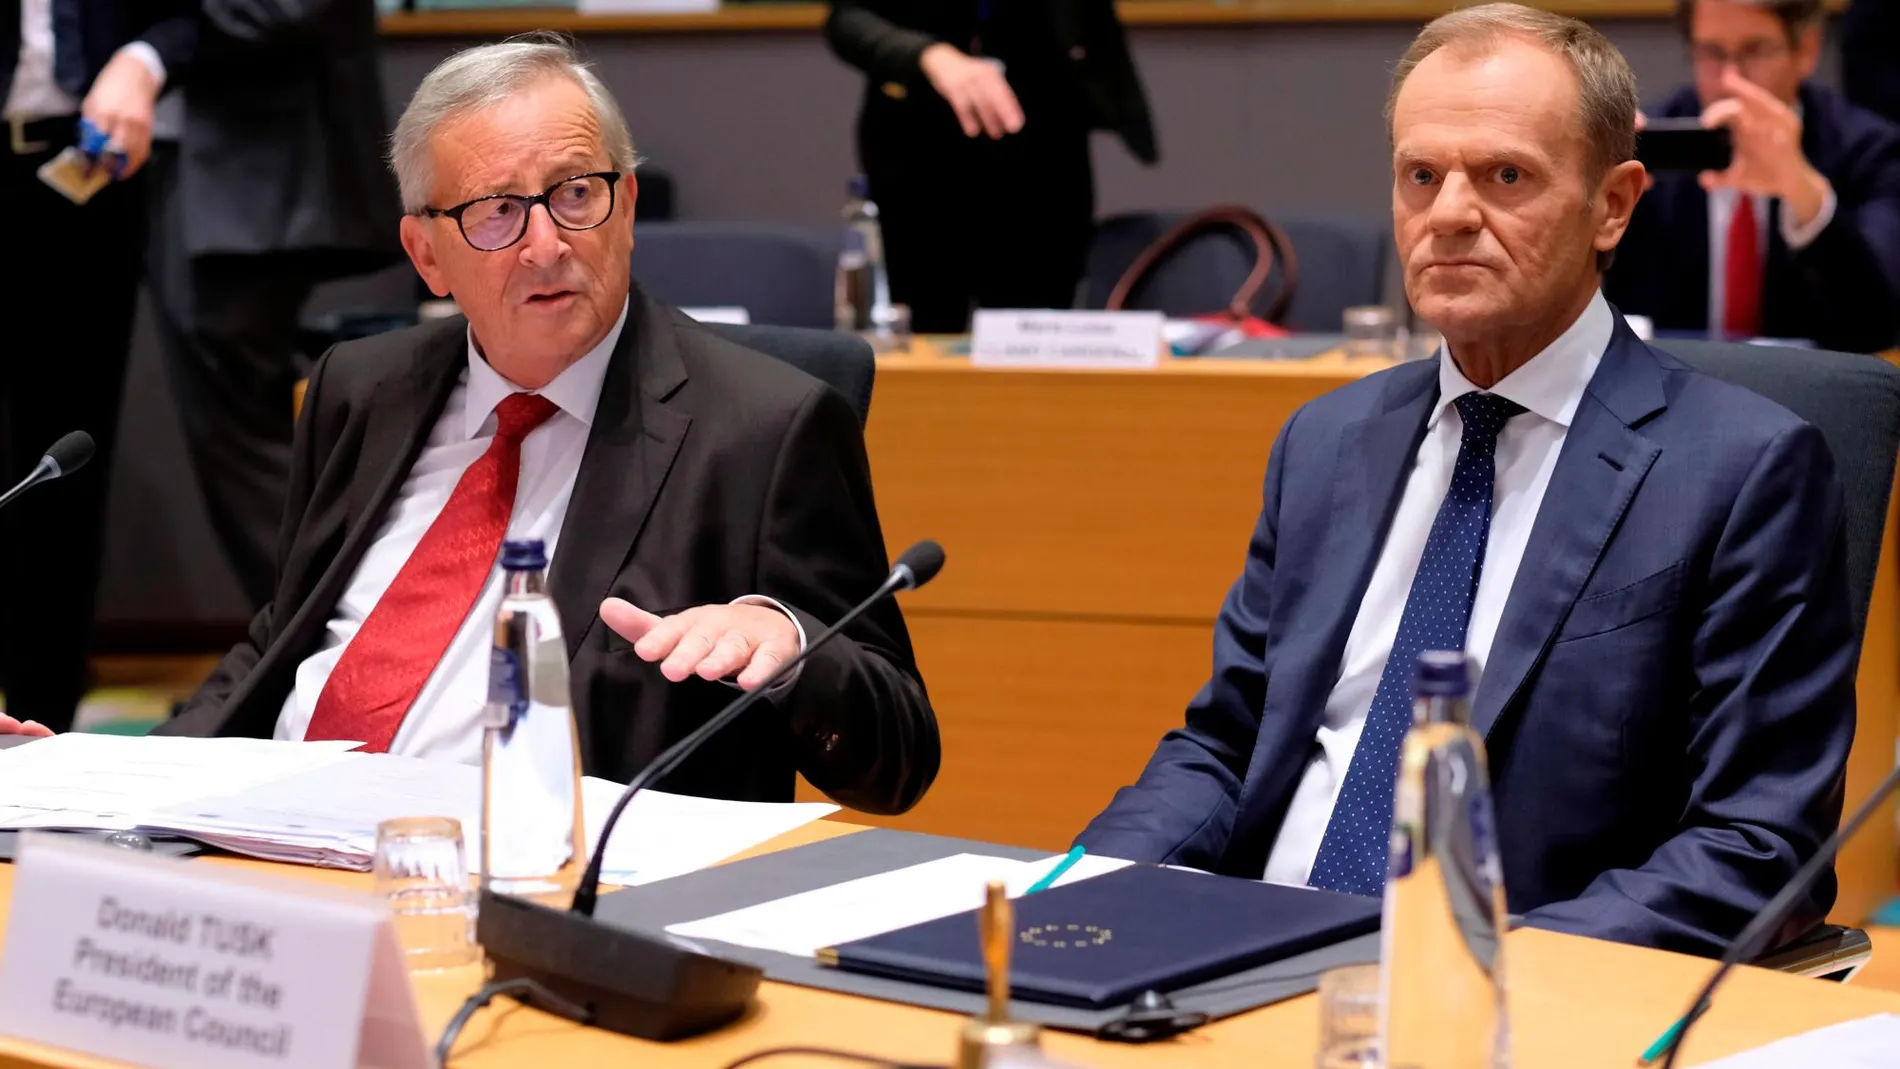 Los presidente de la Comisión Europea, Jean-Claude Juncker, y del Consejo de Europa, Donald Tusk, durante una cumbre hoy en Bruselas.